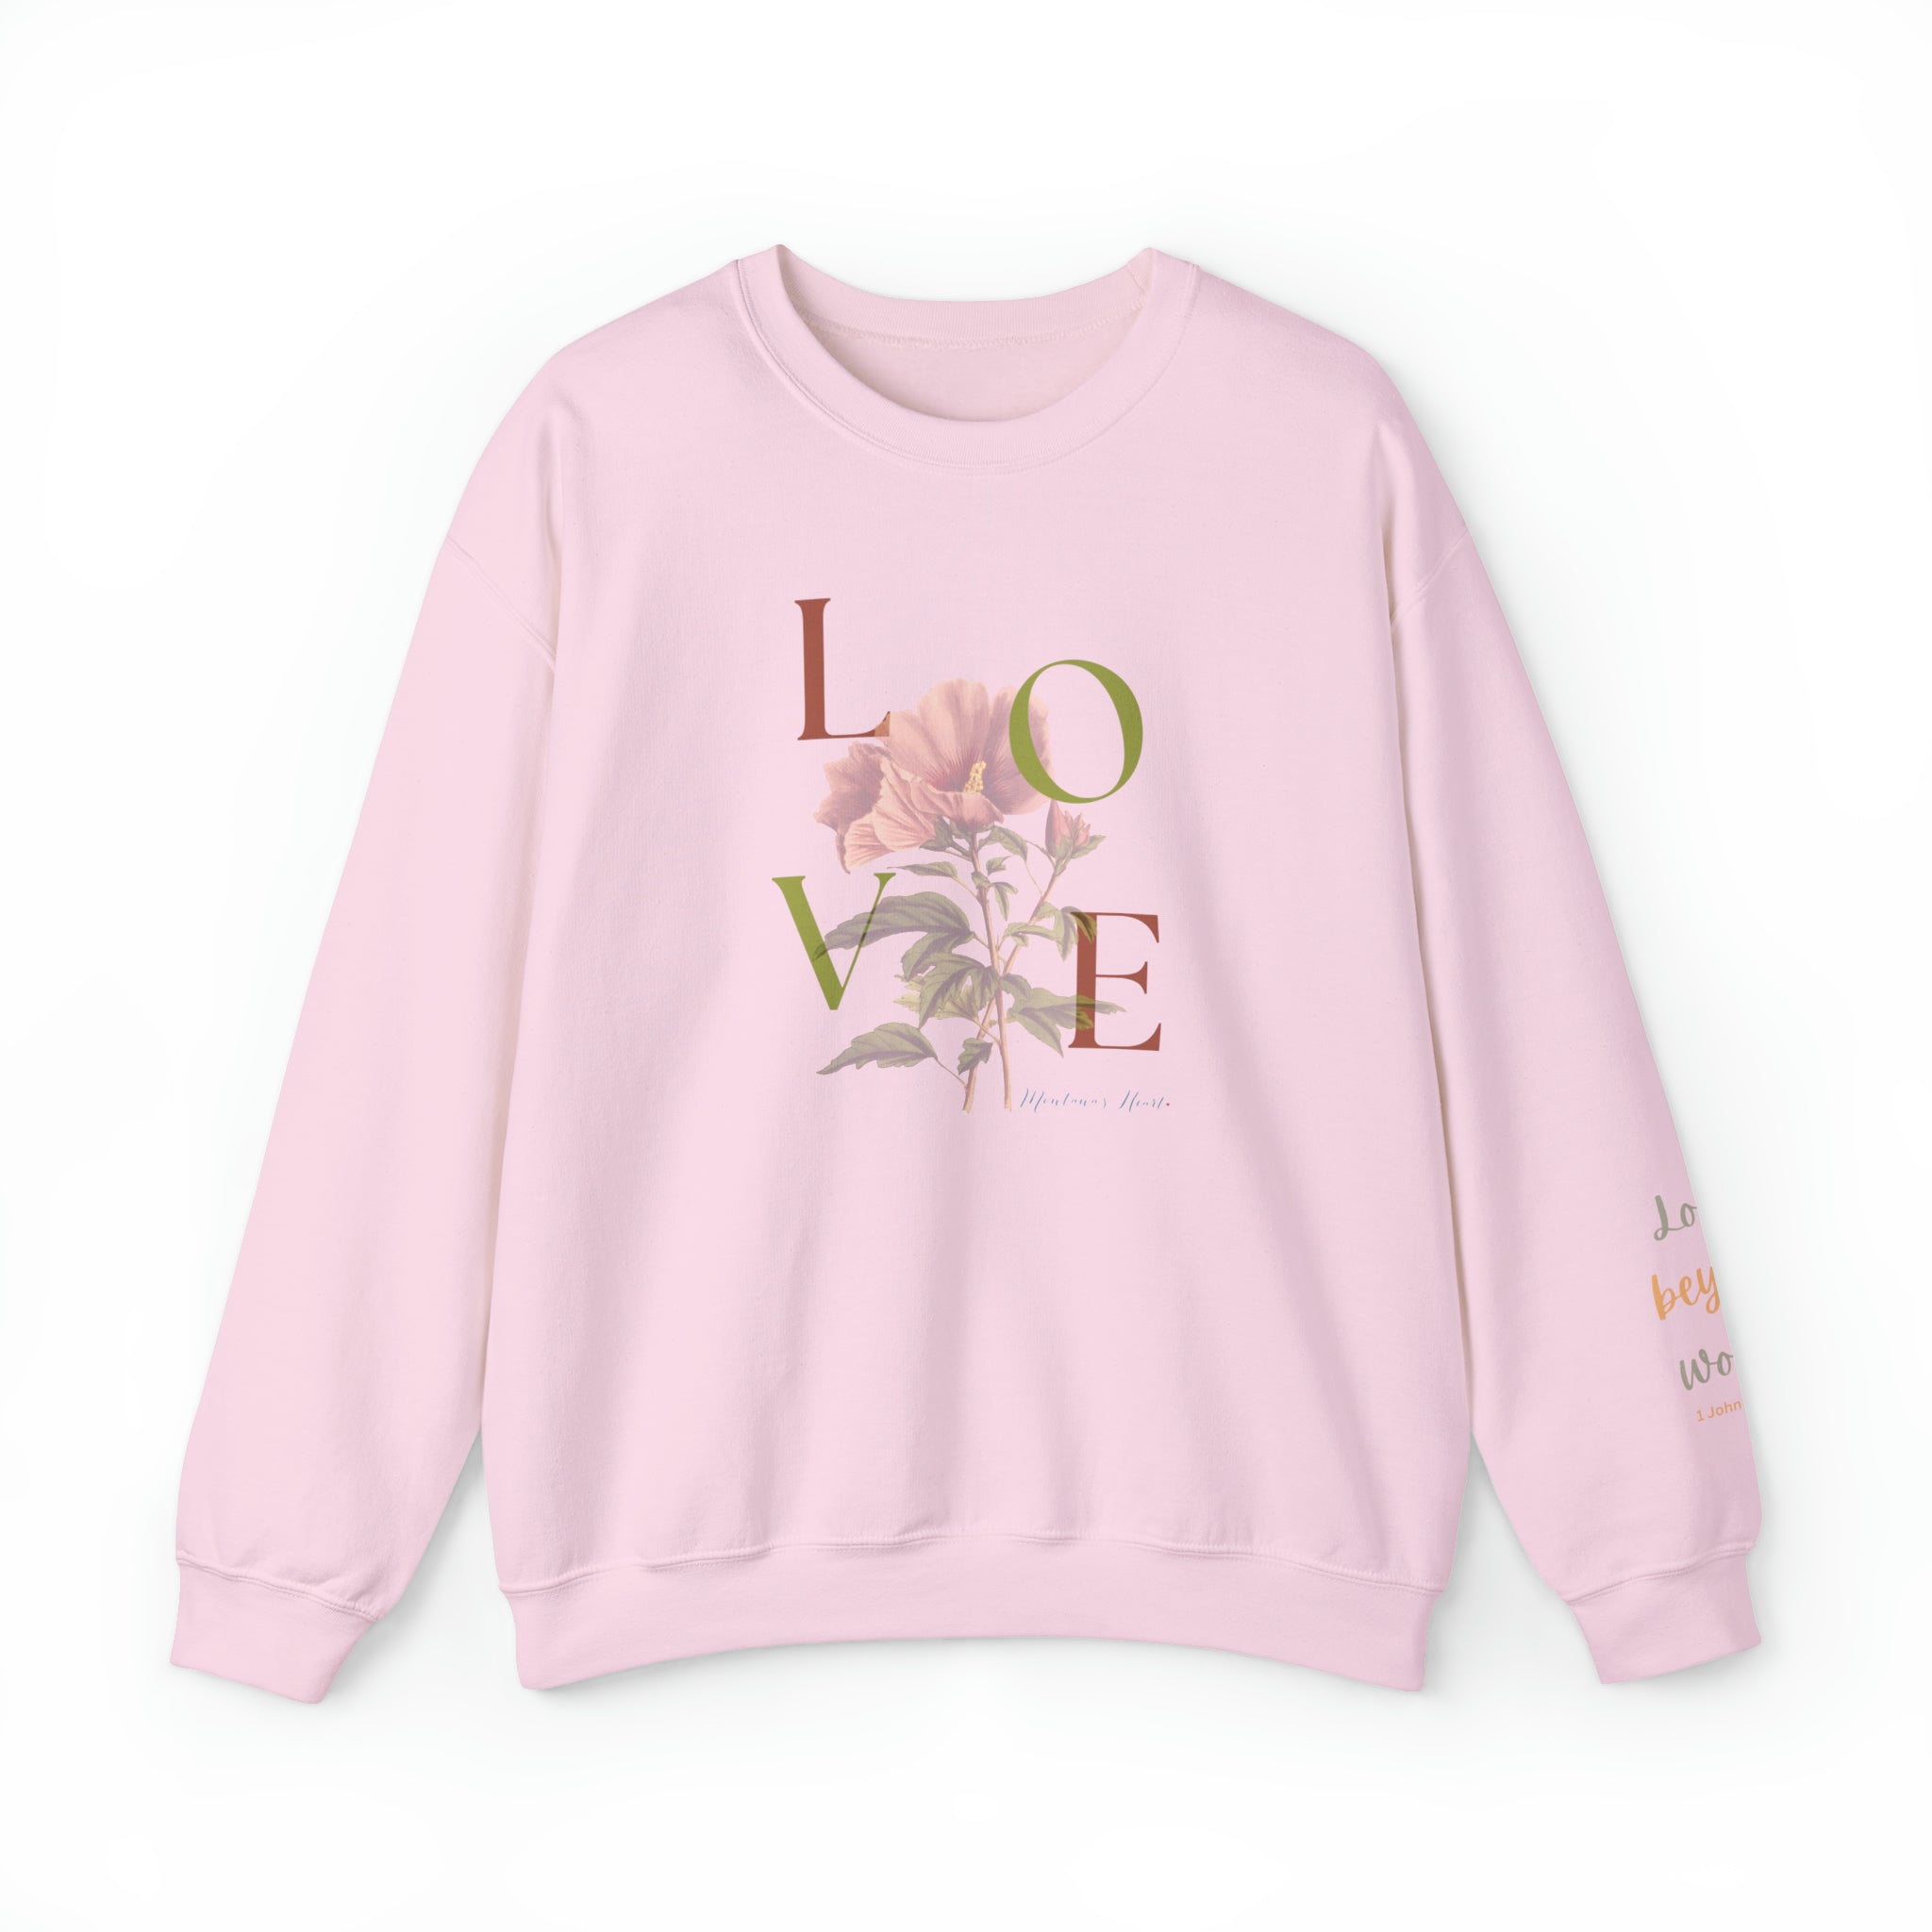 Love Beyond Words, Ladies sweatshirt